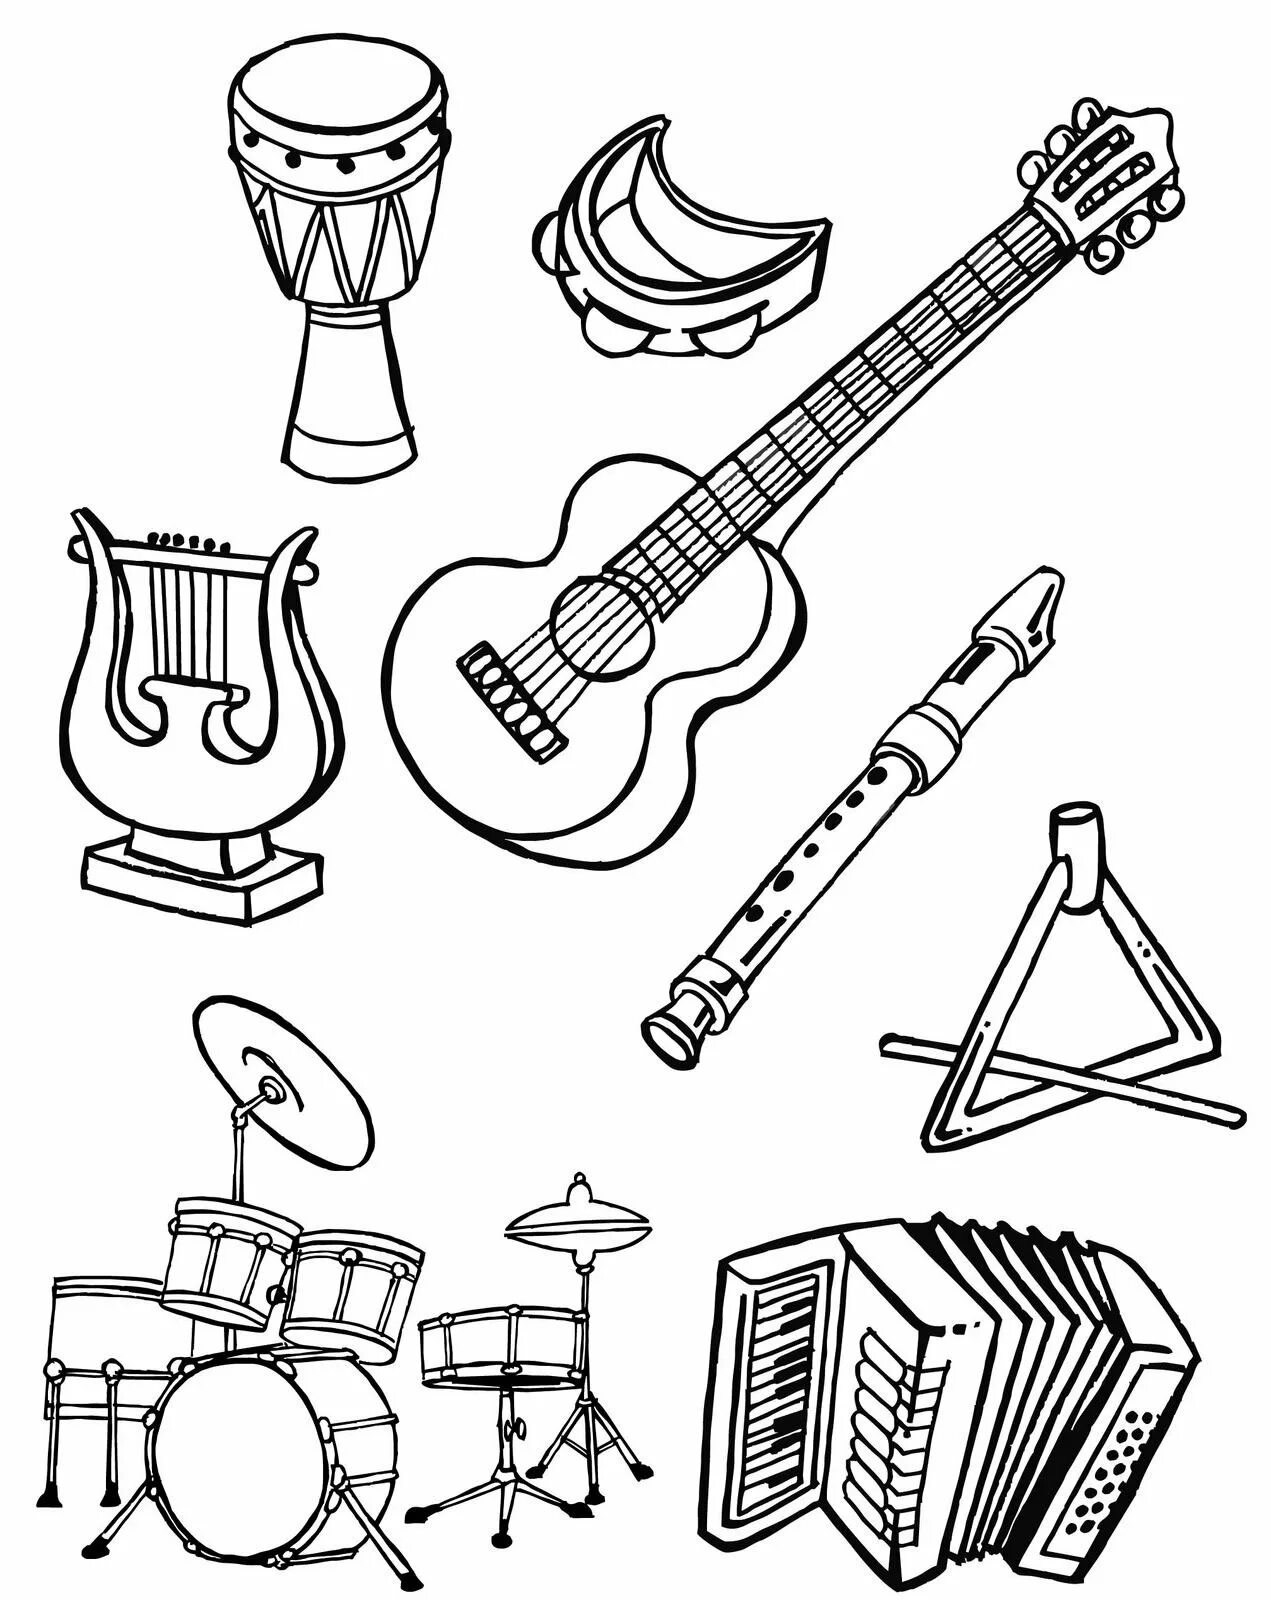 Музыкальные инструменты раскраска. Раскраска музыкальные инструменты для детей. Раскраски муз инструментов для детей. Раскраска для малышей музыкальные инструменты. Распечатать музыкальный инструмент